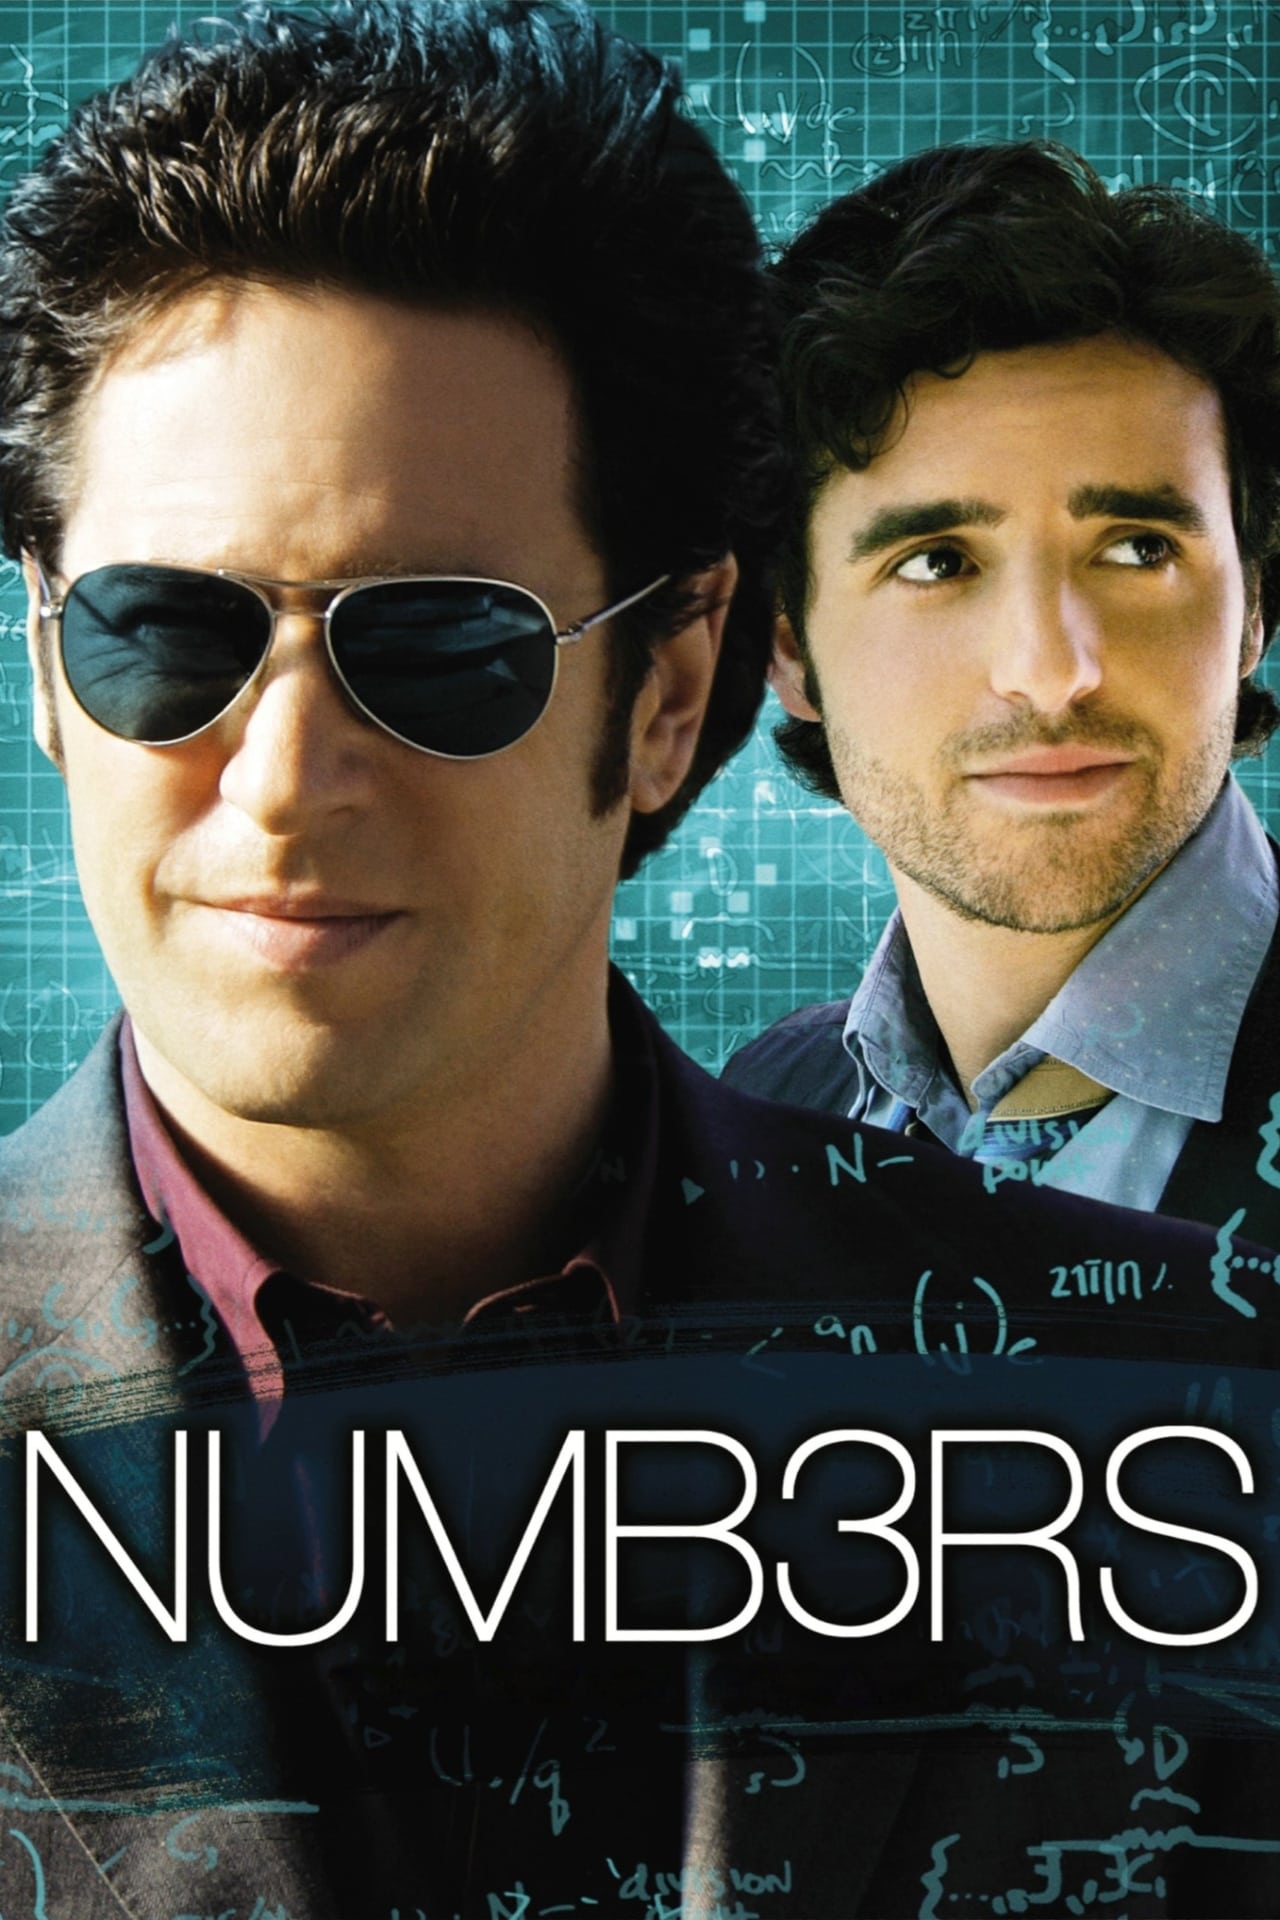 Numb3rs (season 1)